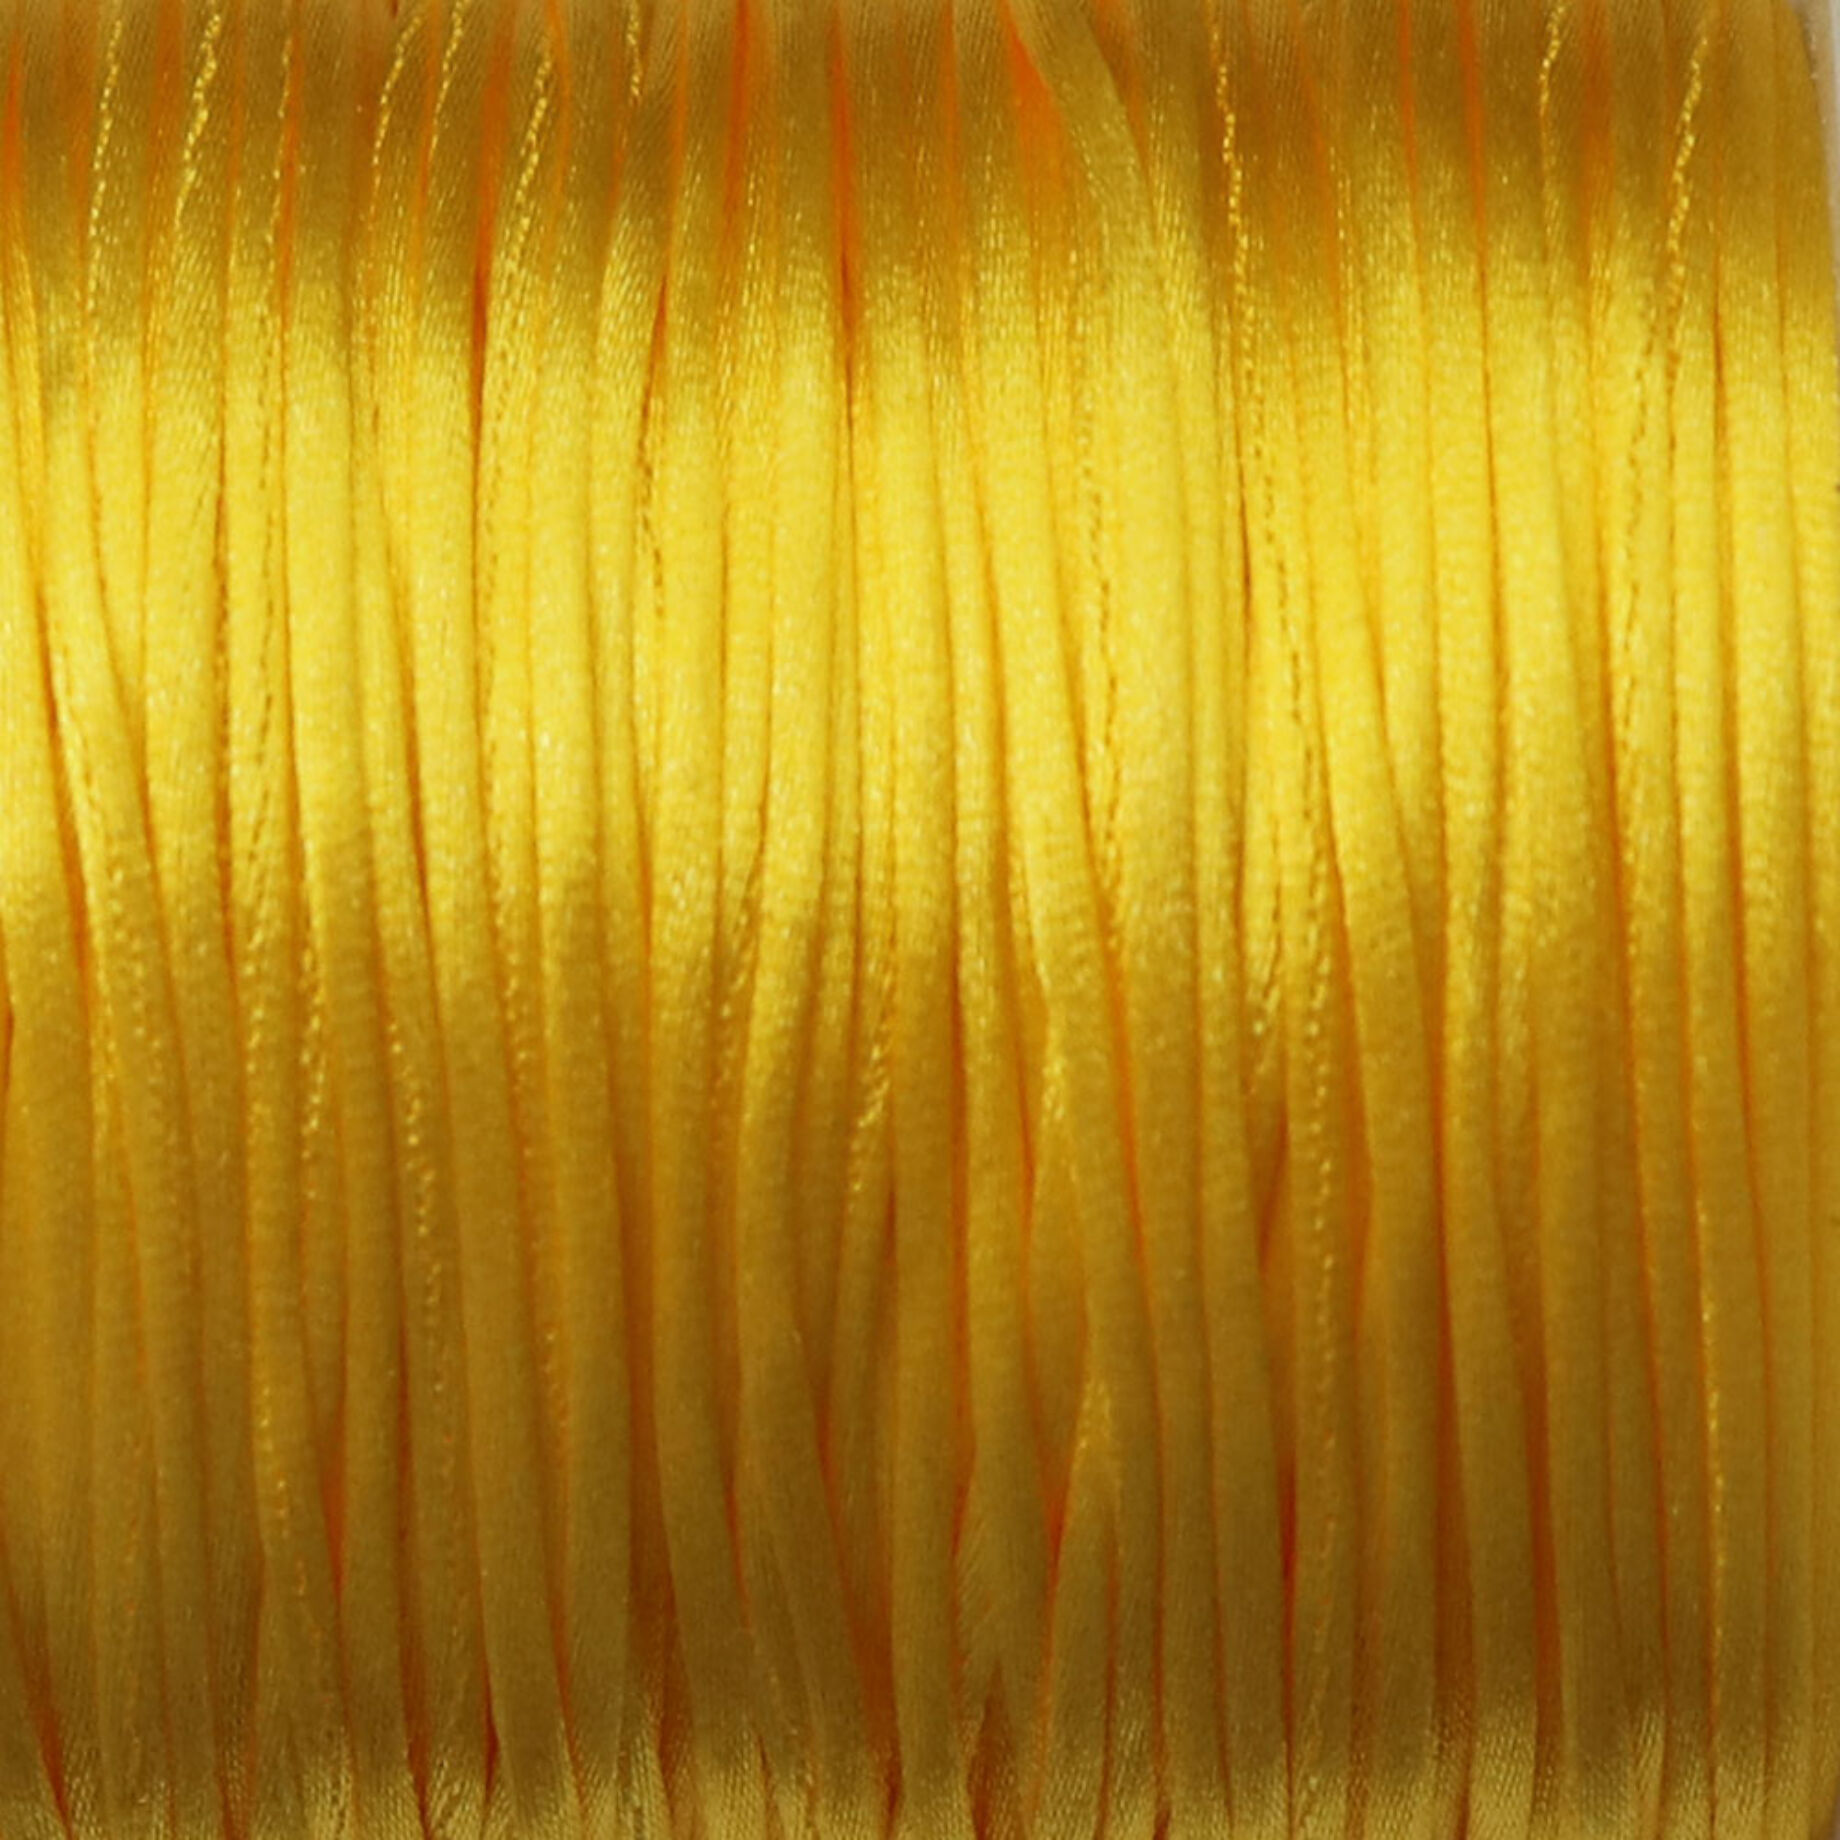 Szatén selyem zsinór, sárga, 1,5 mm